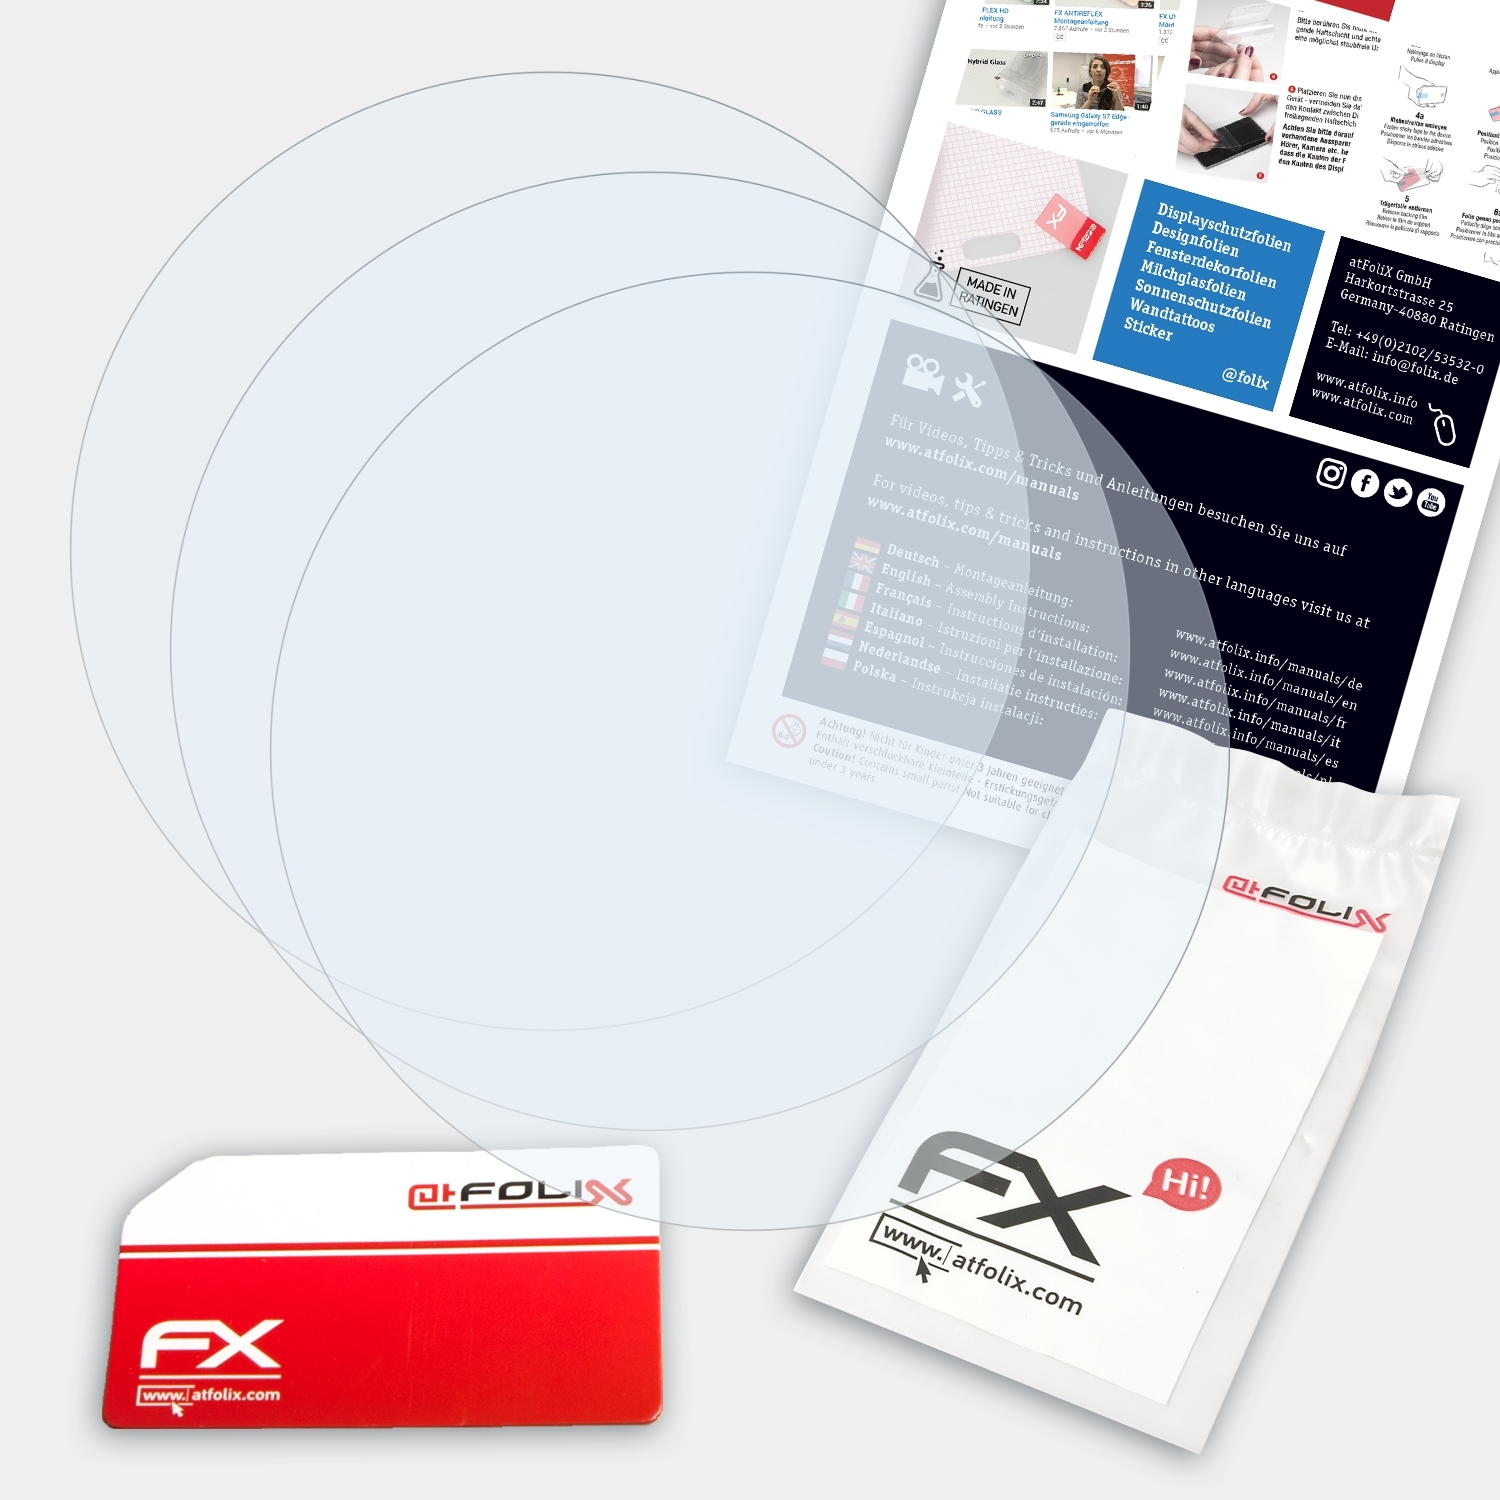 ATFOLIX 3x FX-Clear Displayschutz(für Casio WSD-F30)